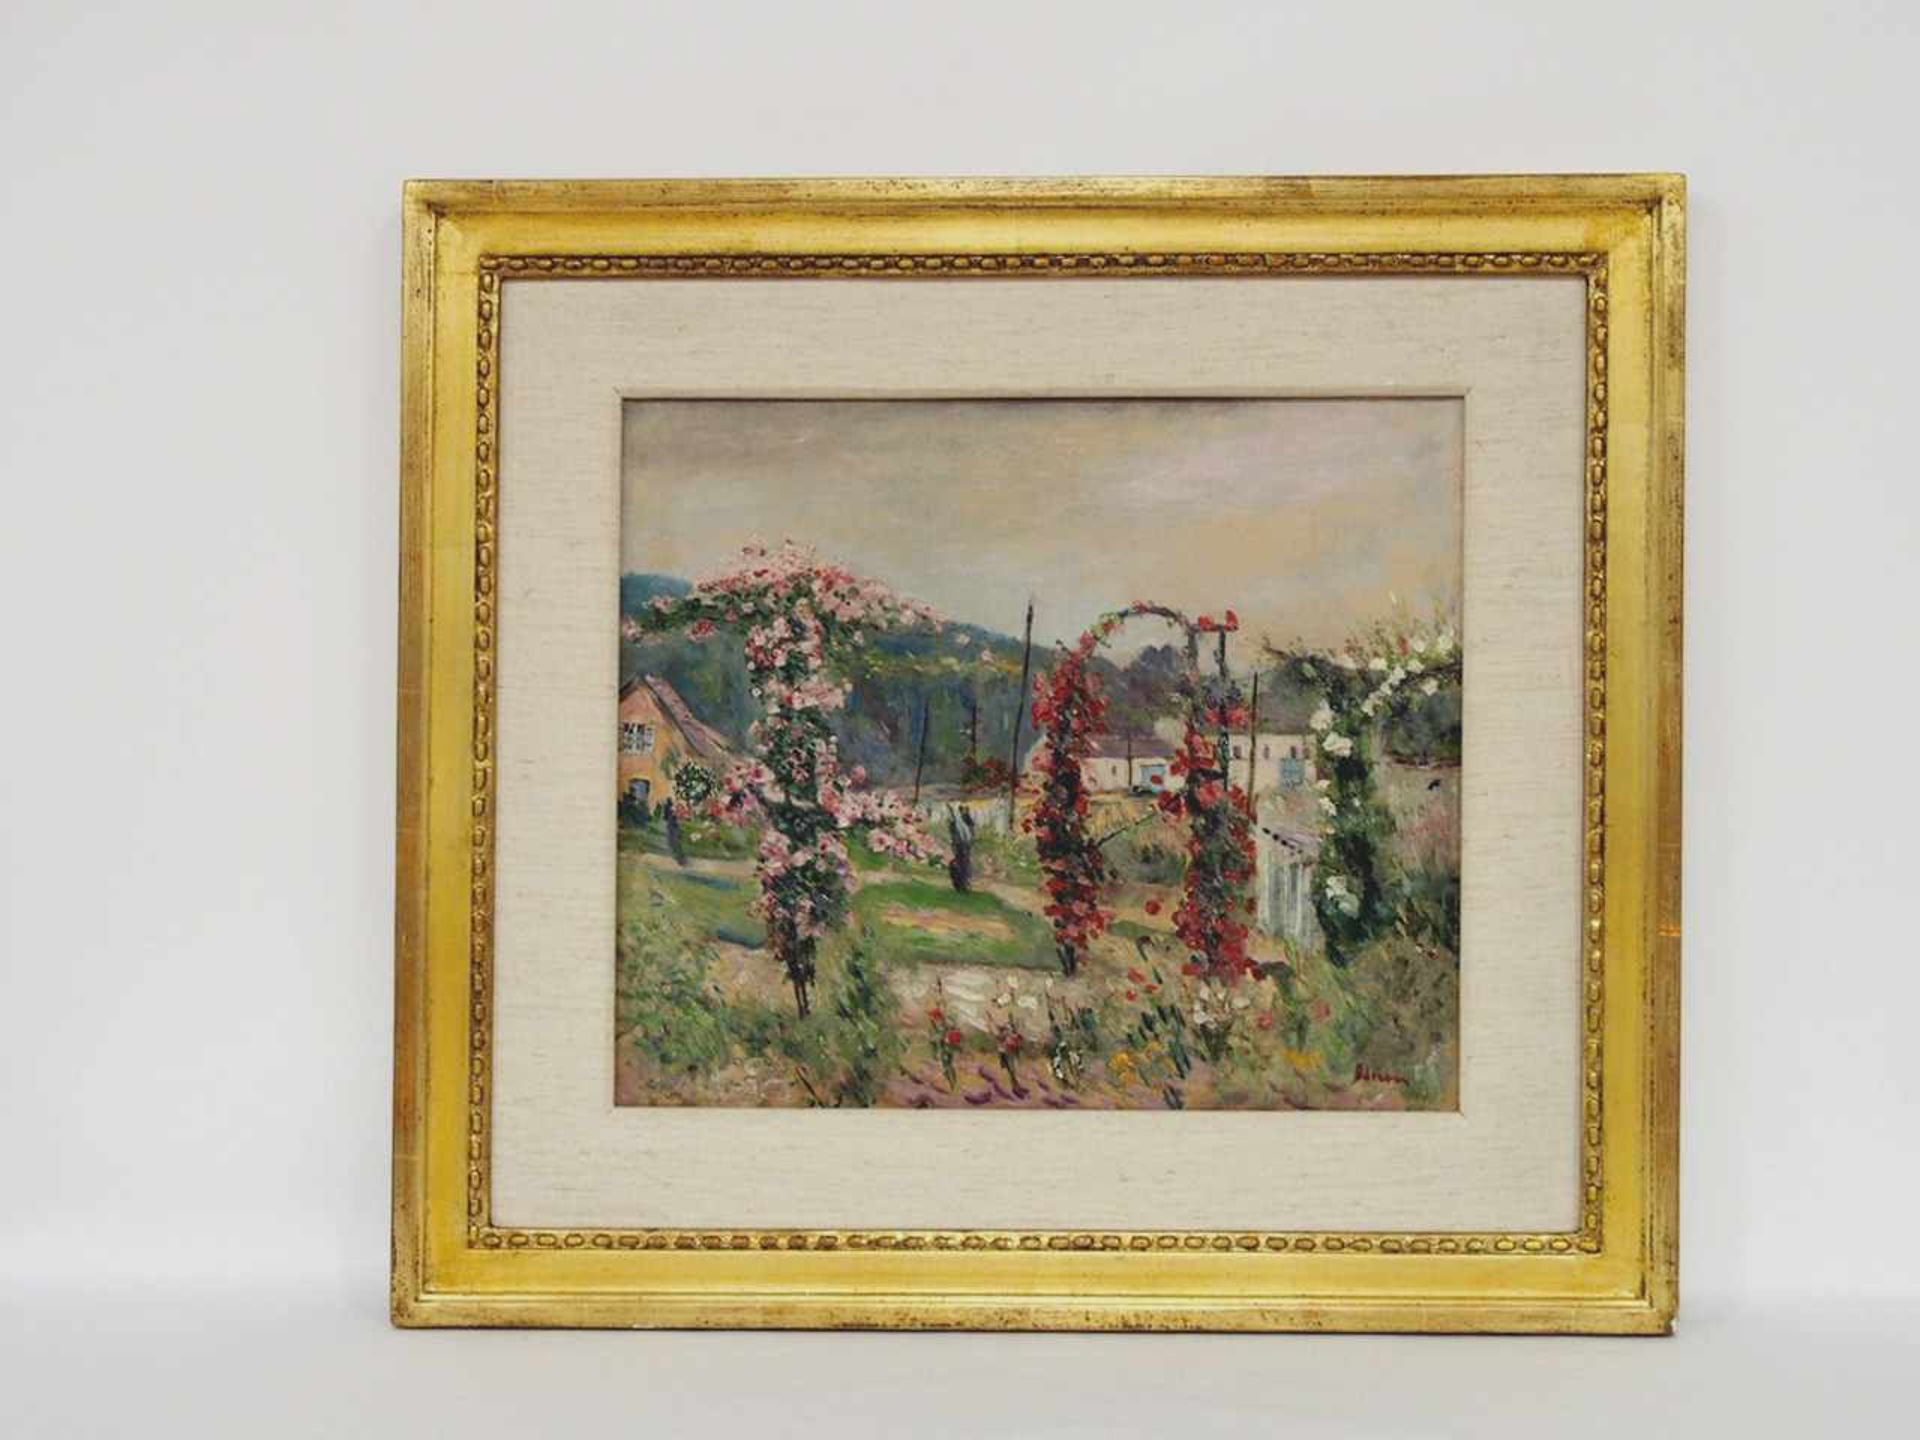 ADRION, Lucien1889-1953Roseraie à bievresÖl auf Leinwand, signiert unten rechts, 37 x 44 cm, - Bild 2 aus 2